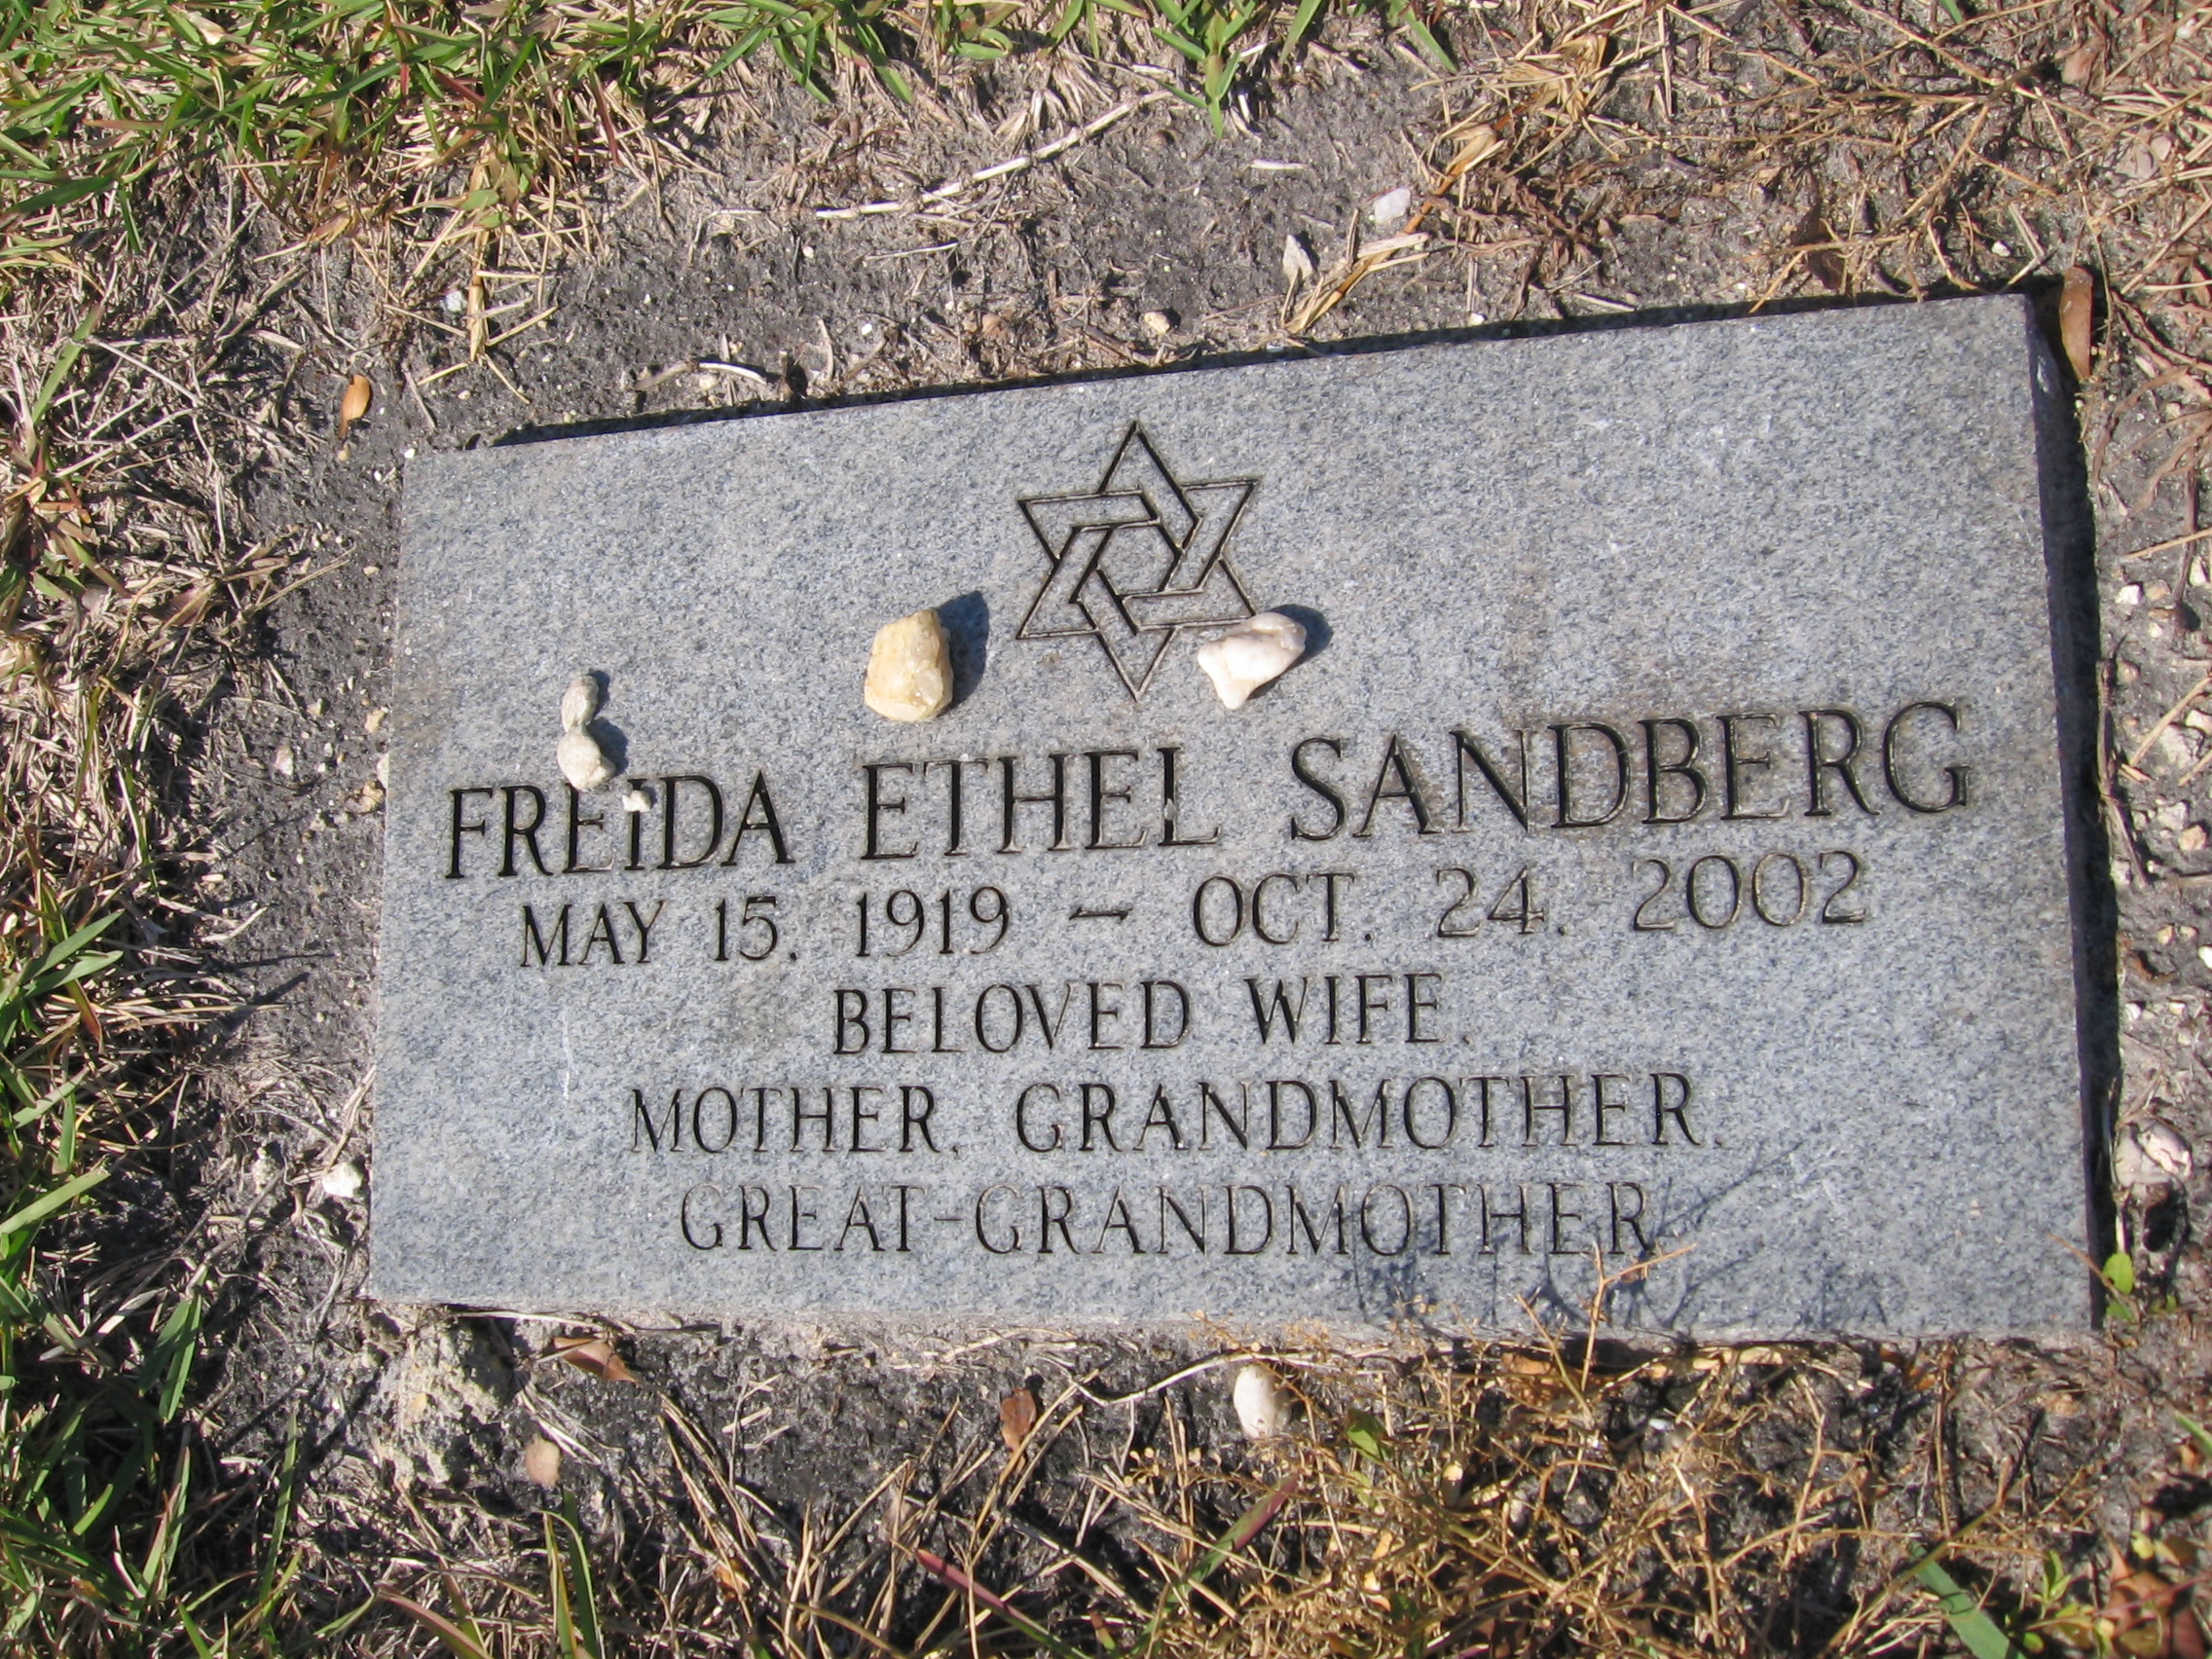 Freida Ethel Sandburg